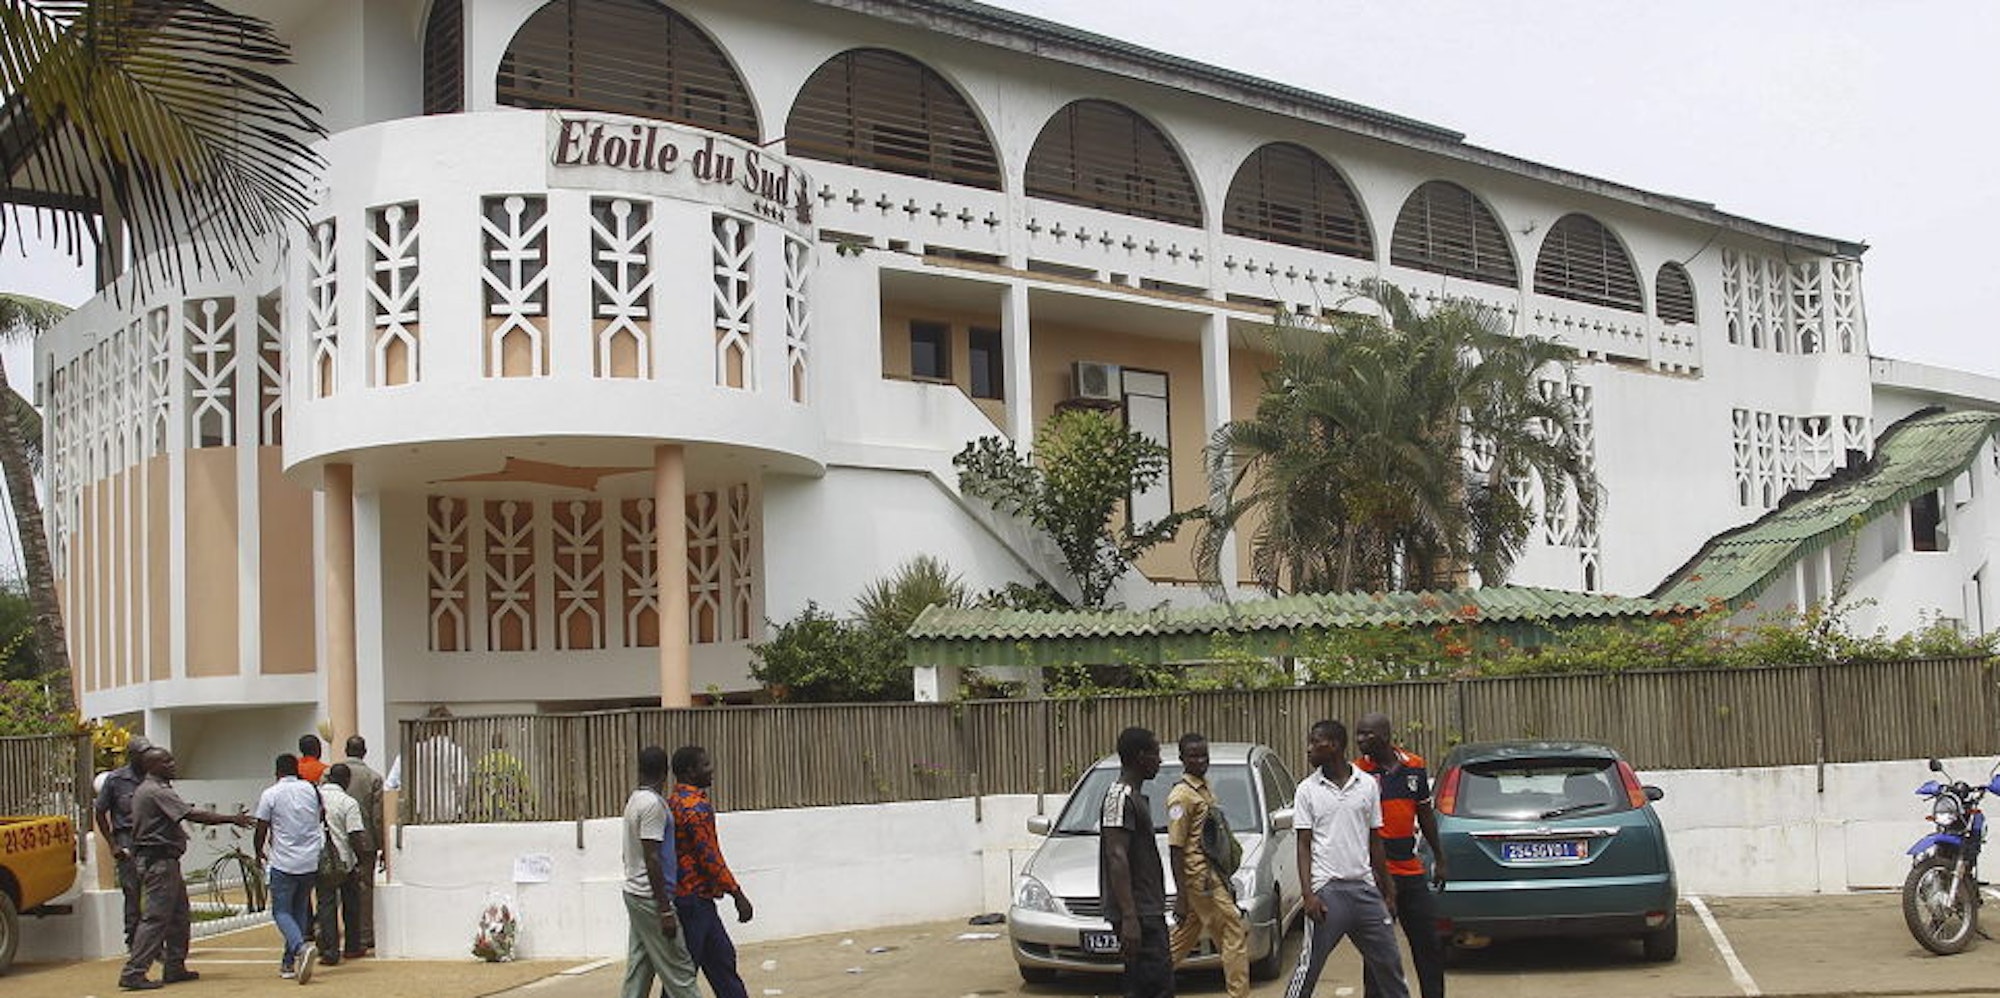 Bauten im Kolonialstil wie dieses Hotel prägen die Lagunenstadt Grand-Bassam an der Elfenbeinküste.